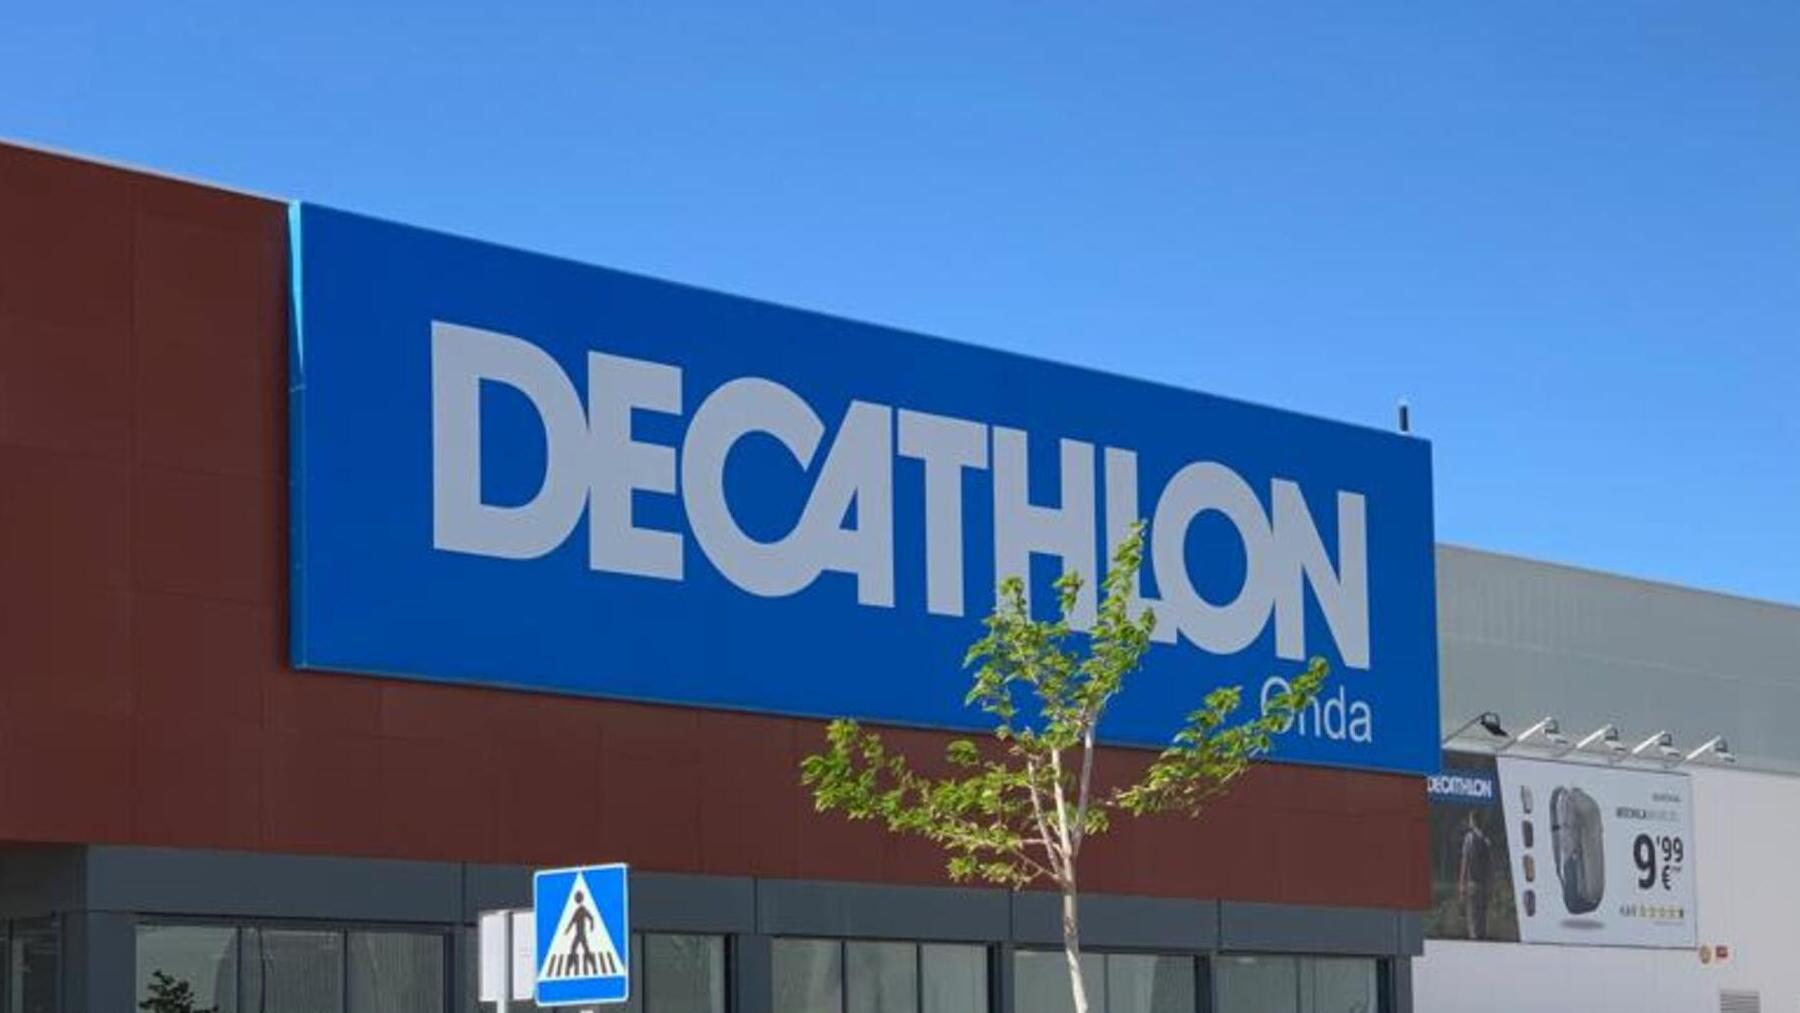 Tienda de Decathlon